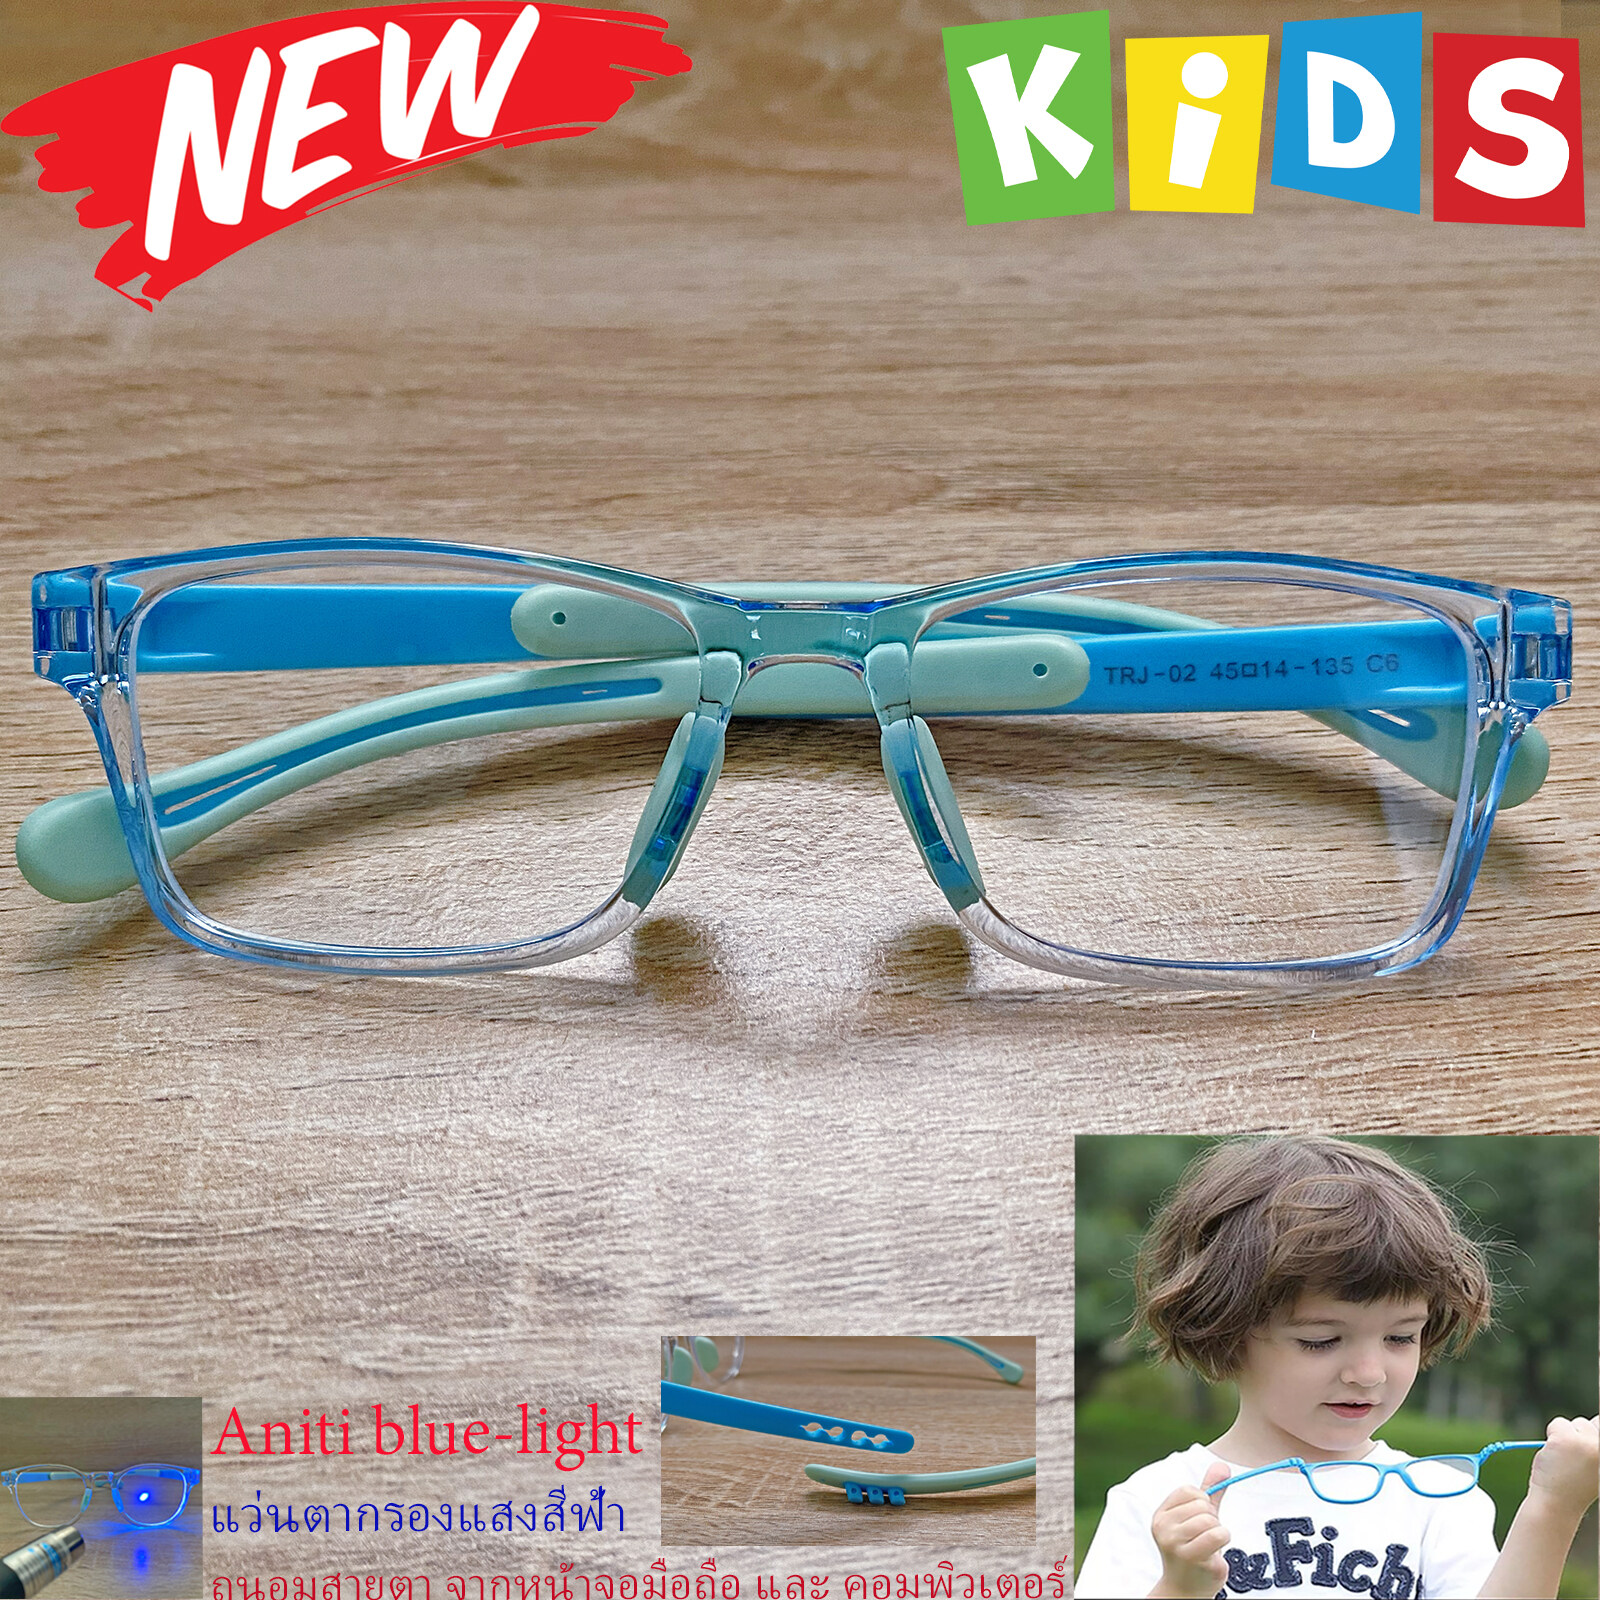 กรอบแว่นตาเด็ก กรองแสง สีฟ้า blue block แว่นเด็ก บลูบล็อค รุ่น 02 สีฟ้าใส ขาข้อต่อยืดหยุ่น ขาปรับระดับได้ วัสดุTR90 เหมาะสำหรับเลนส์สายตา